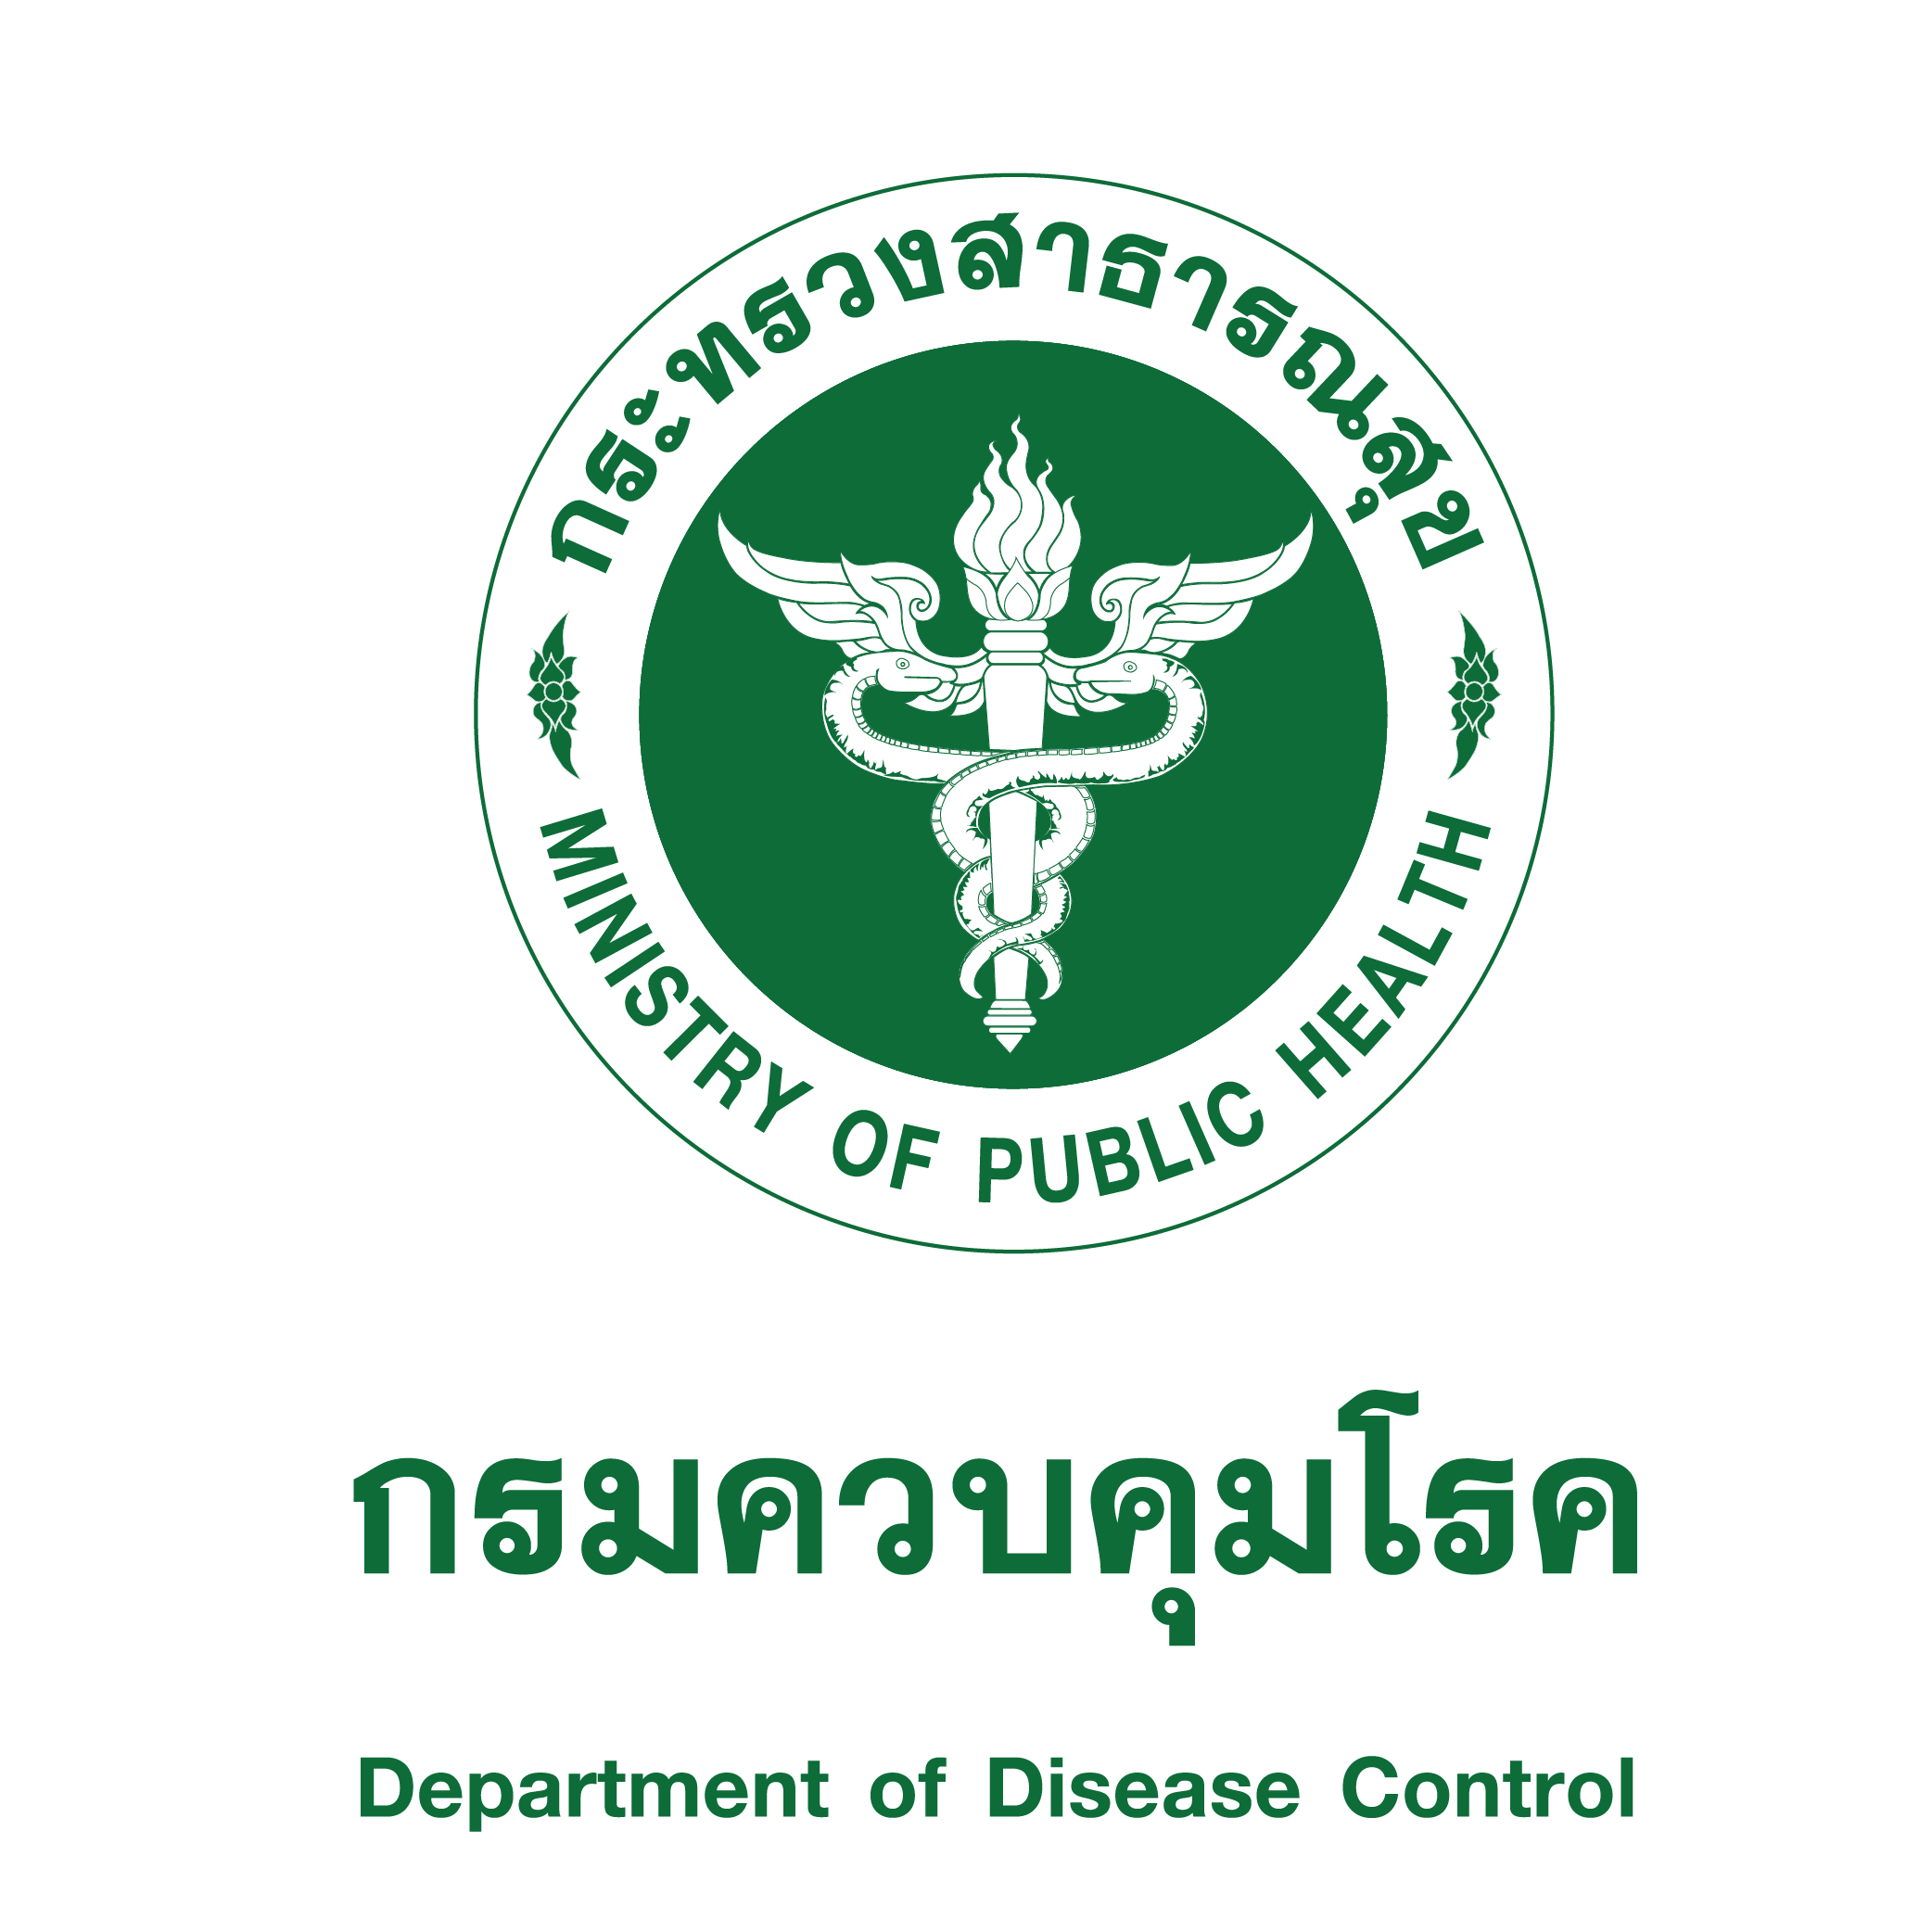 กลุ่มพัฒนาระบบบริหารองค์กร ประชาสัมพันธ์การรับสมัครบุคลากรกรมควบคุมโรคเป็นคณะผู้แทนไทยเข้าร่วมการประชุมสมัชชาอนามัยโลก สมัยที่ 76 